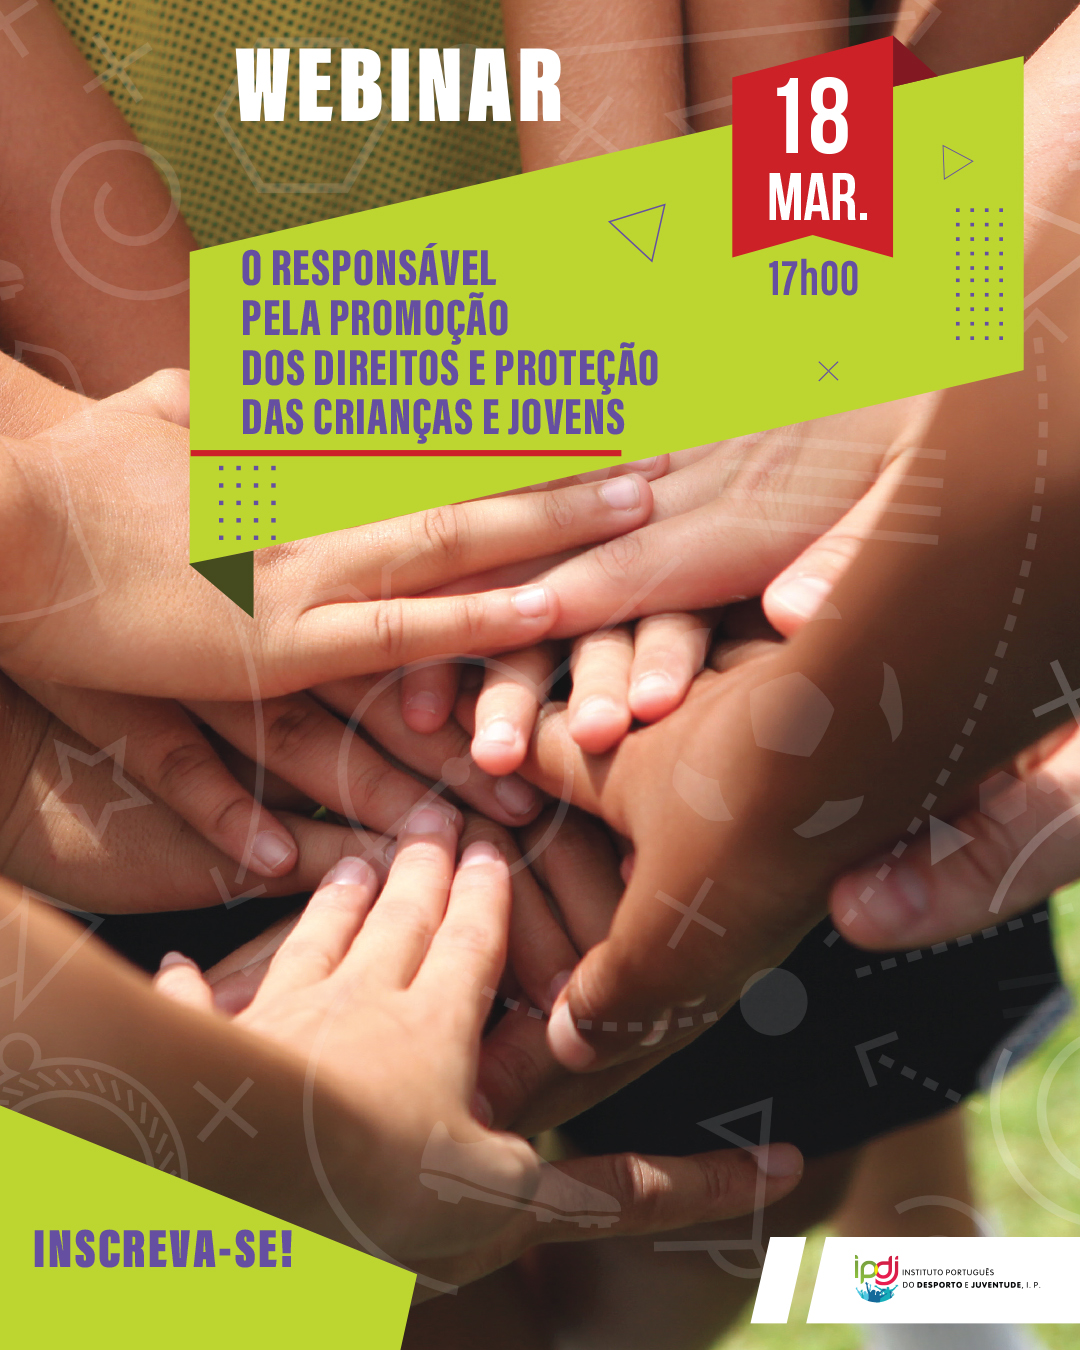 📢🌟 <strong>Webinar: “O responsável pela promoção dos direitos e proteção das crianças e jovens”</strong> 🌟📢